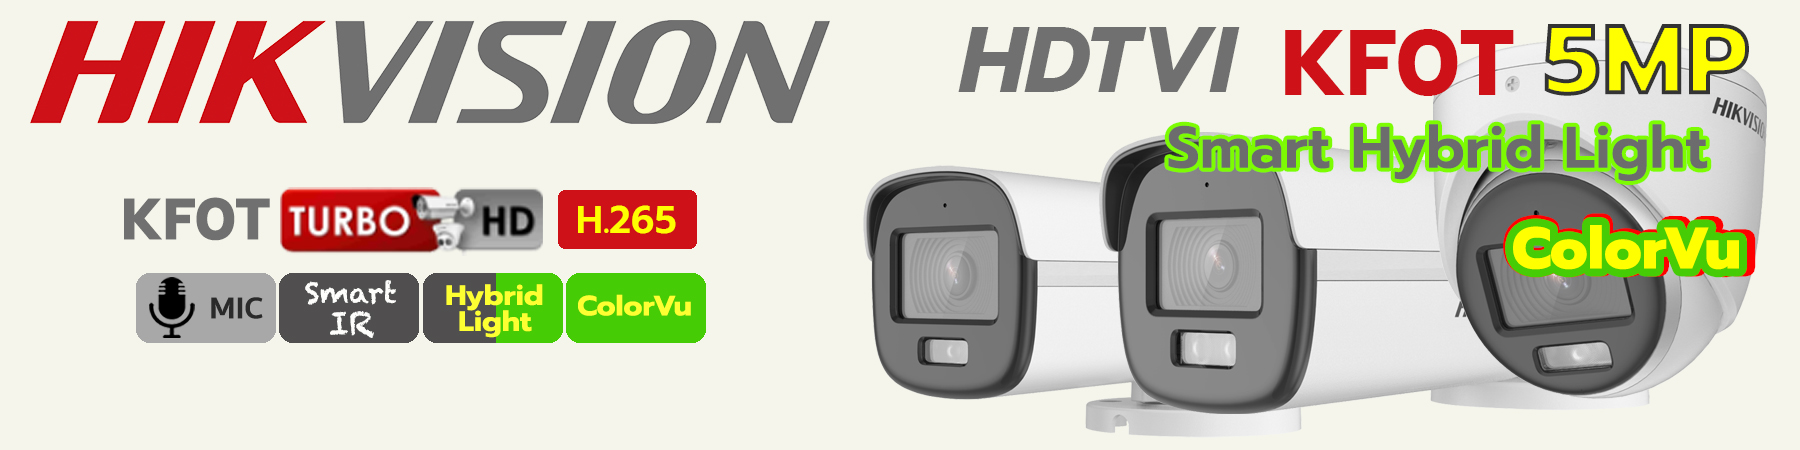 กล้องวงจรปิด Hikvision Smart Hybrid Light, กล้อง Hikvision ภาพสีกลางคืน, Hikvision กลางคืน 2ระบบ, DS-2CE10KF0T-LFS, DS-2CE70KF0T-LMFS, DS-2CE12KF0T-LFS